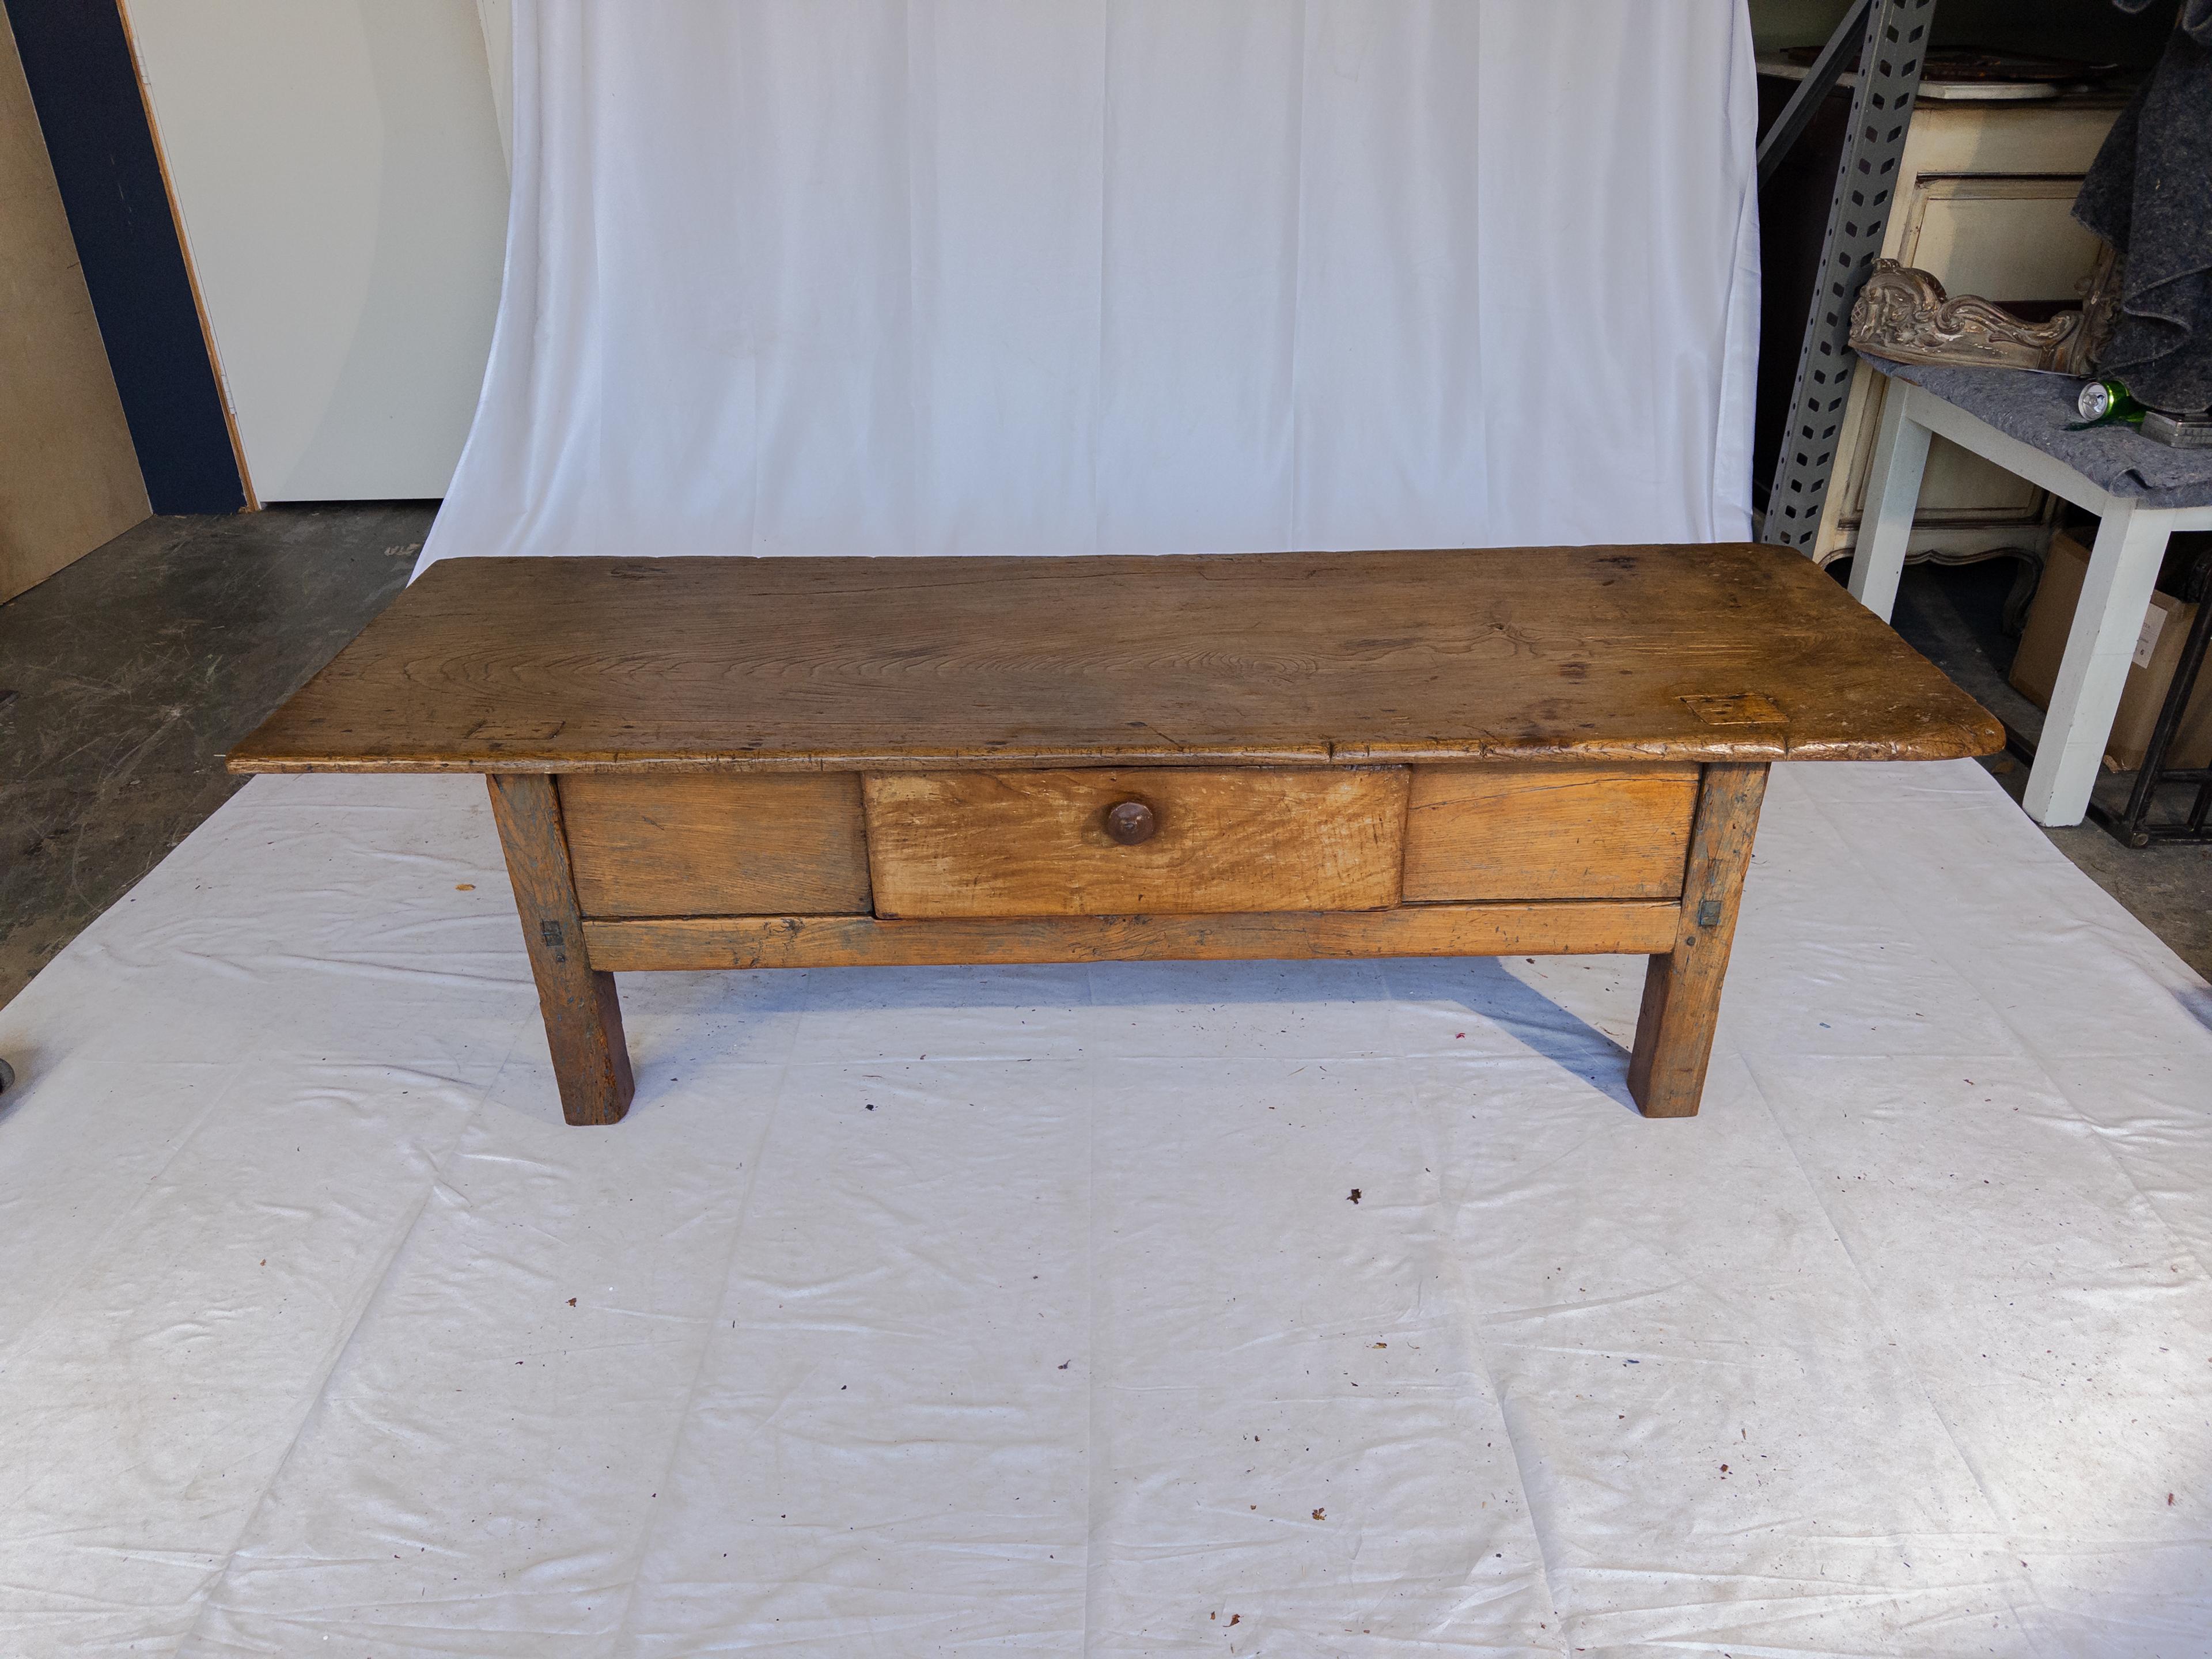 La table basse ancienne en bois témoigne de l'attrait durable de l'artisanat vintage. Fabriquée en bois riche et vieilli, sa surface porte la patine des années passées, chaque imperfection racontant sa propre histoire. L'ajout d'un tiroir unique